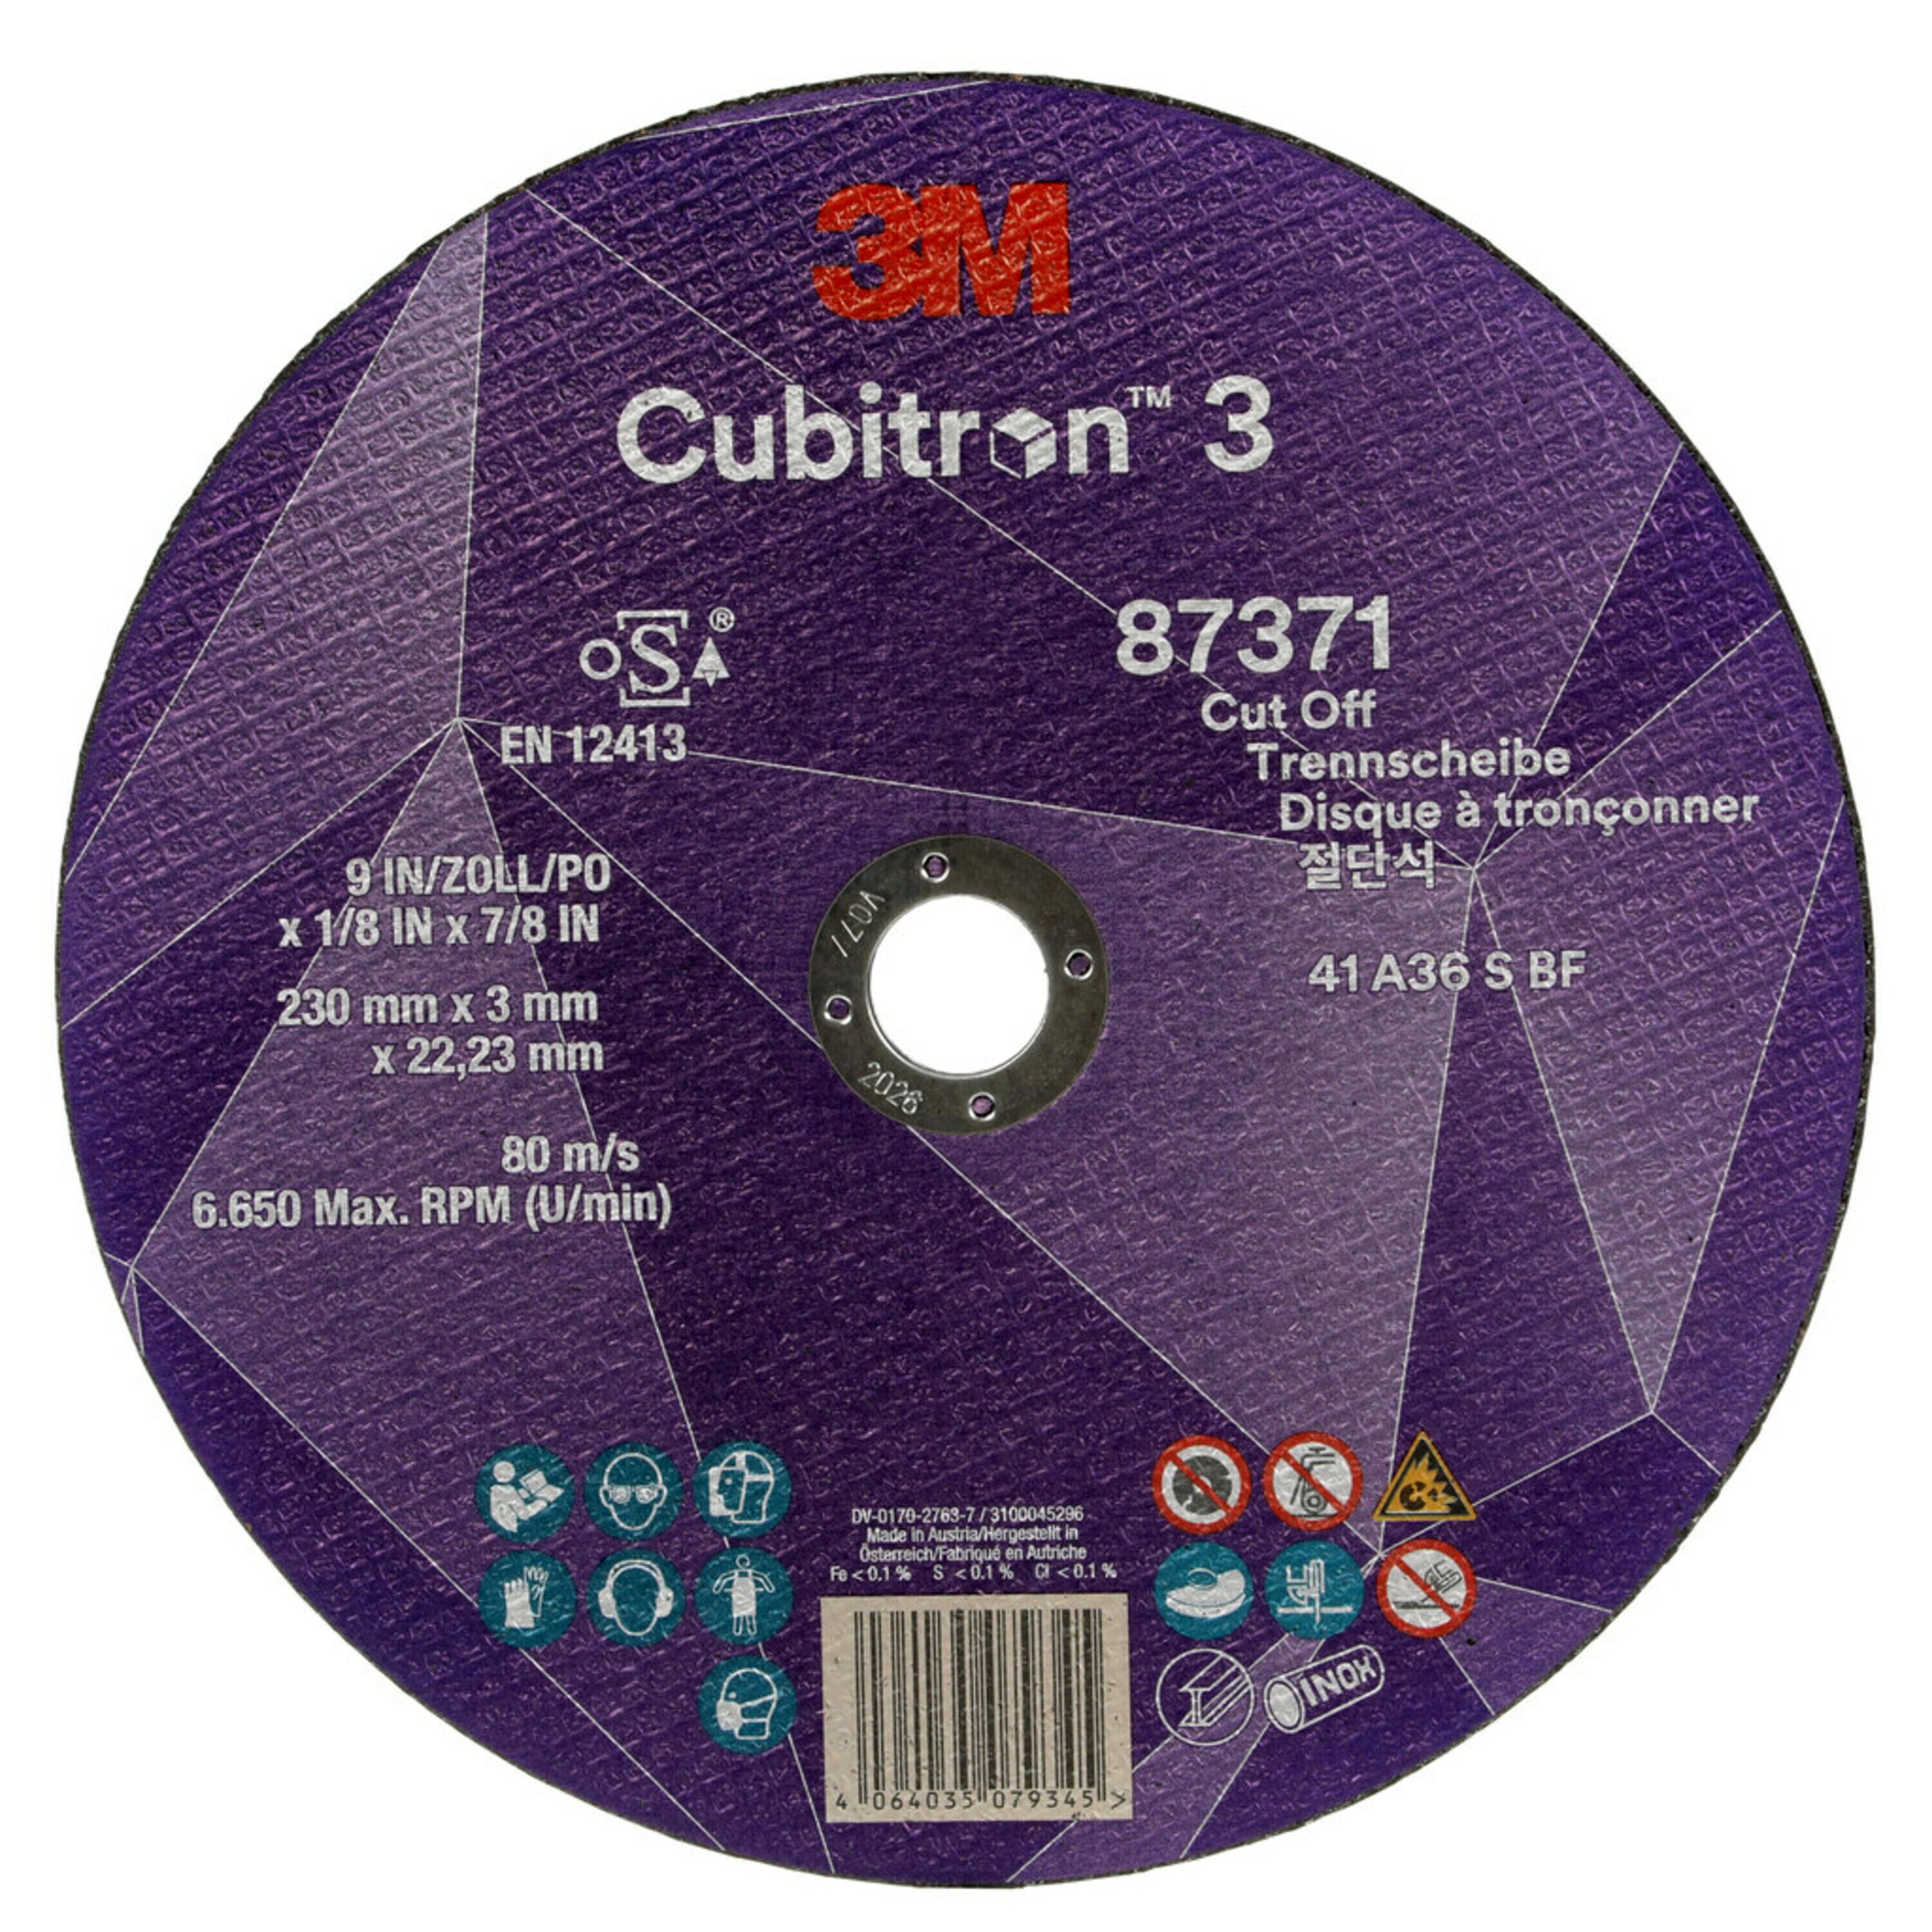 Disco de corte 3M Cubitron 3, 230 mm, 3 mm, 22,23 mm, 36 , tipo 41 #87371